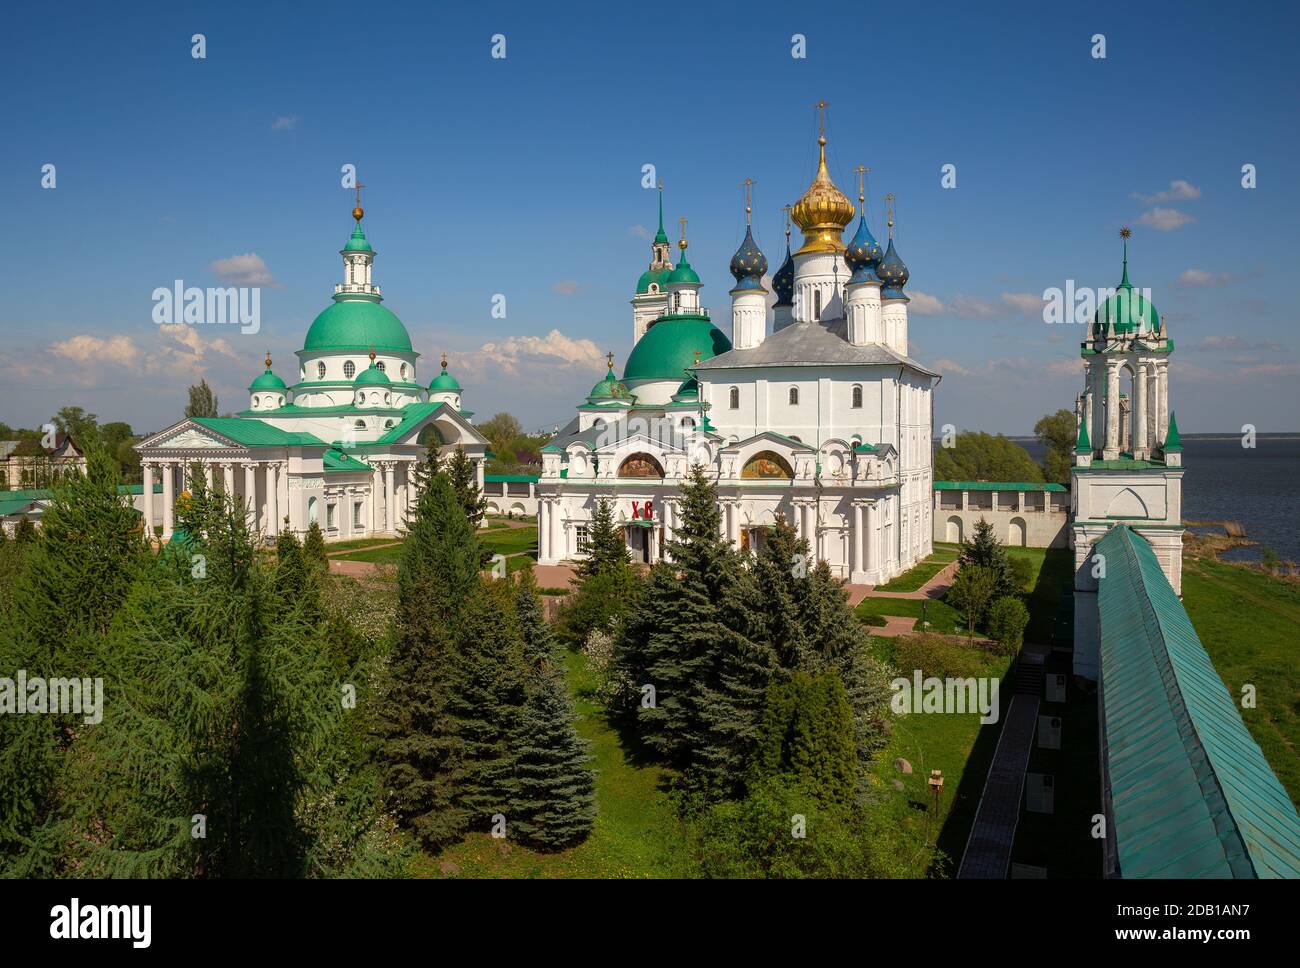 Monastère de Spaso-Yakovlevsky Dimitriev (monastère de Saint-Jacob Sauveur). Rostov Velikiy, région de Yaroslavl, cercle d'or de Russie Banque D'Images